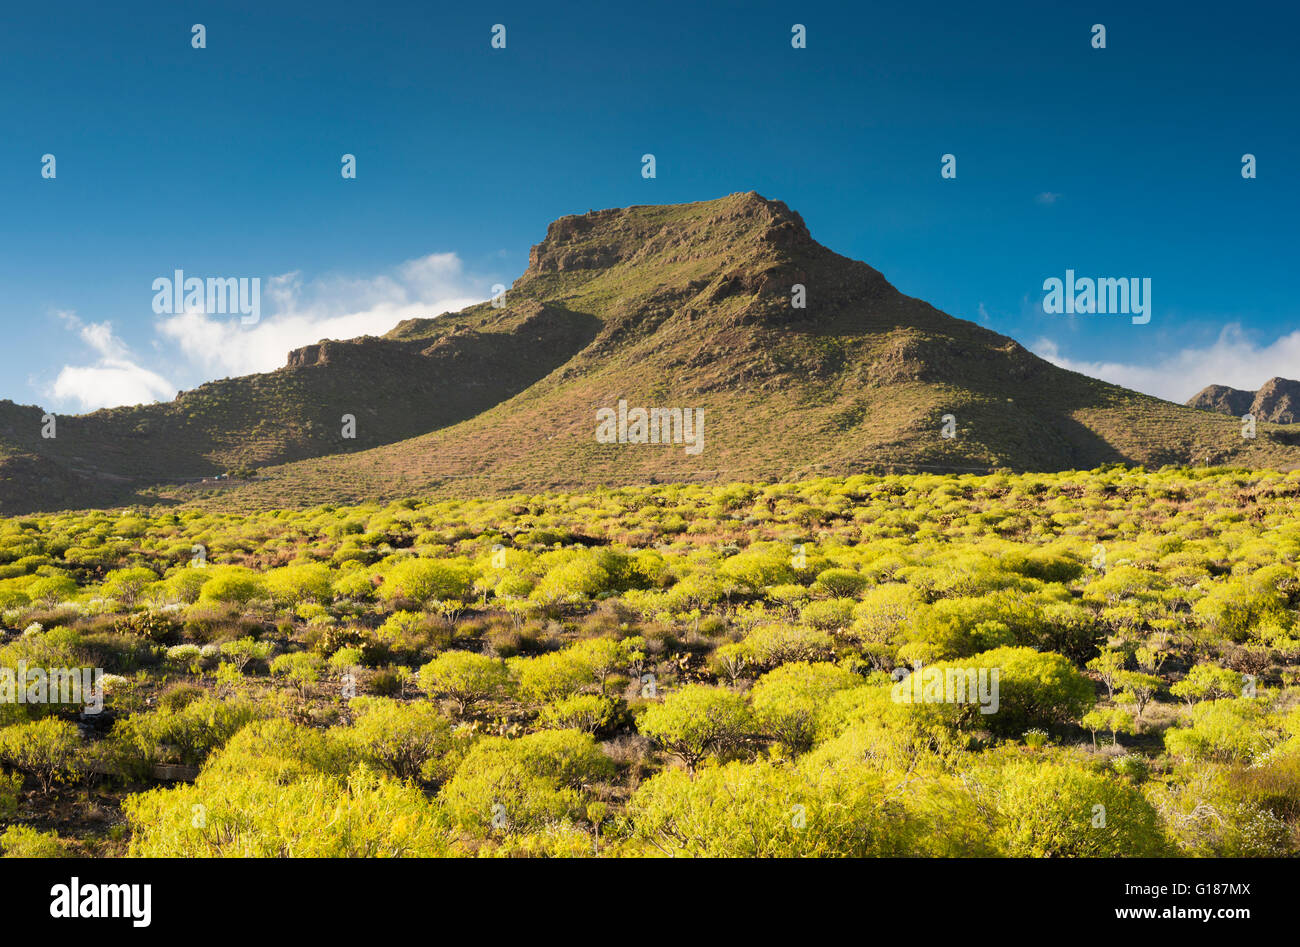 La leggendaria Montagna di Roque del Conde, sud di Tenerife, in primavera, con la flora tipica di questa regione semi-arida in primo piano Foto Stock